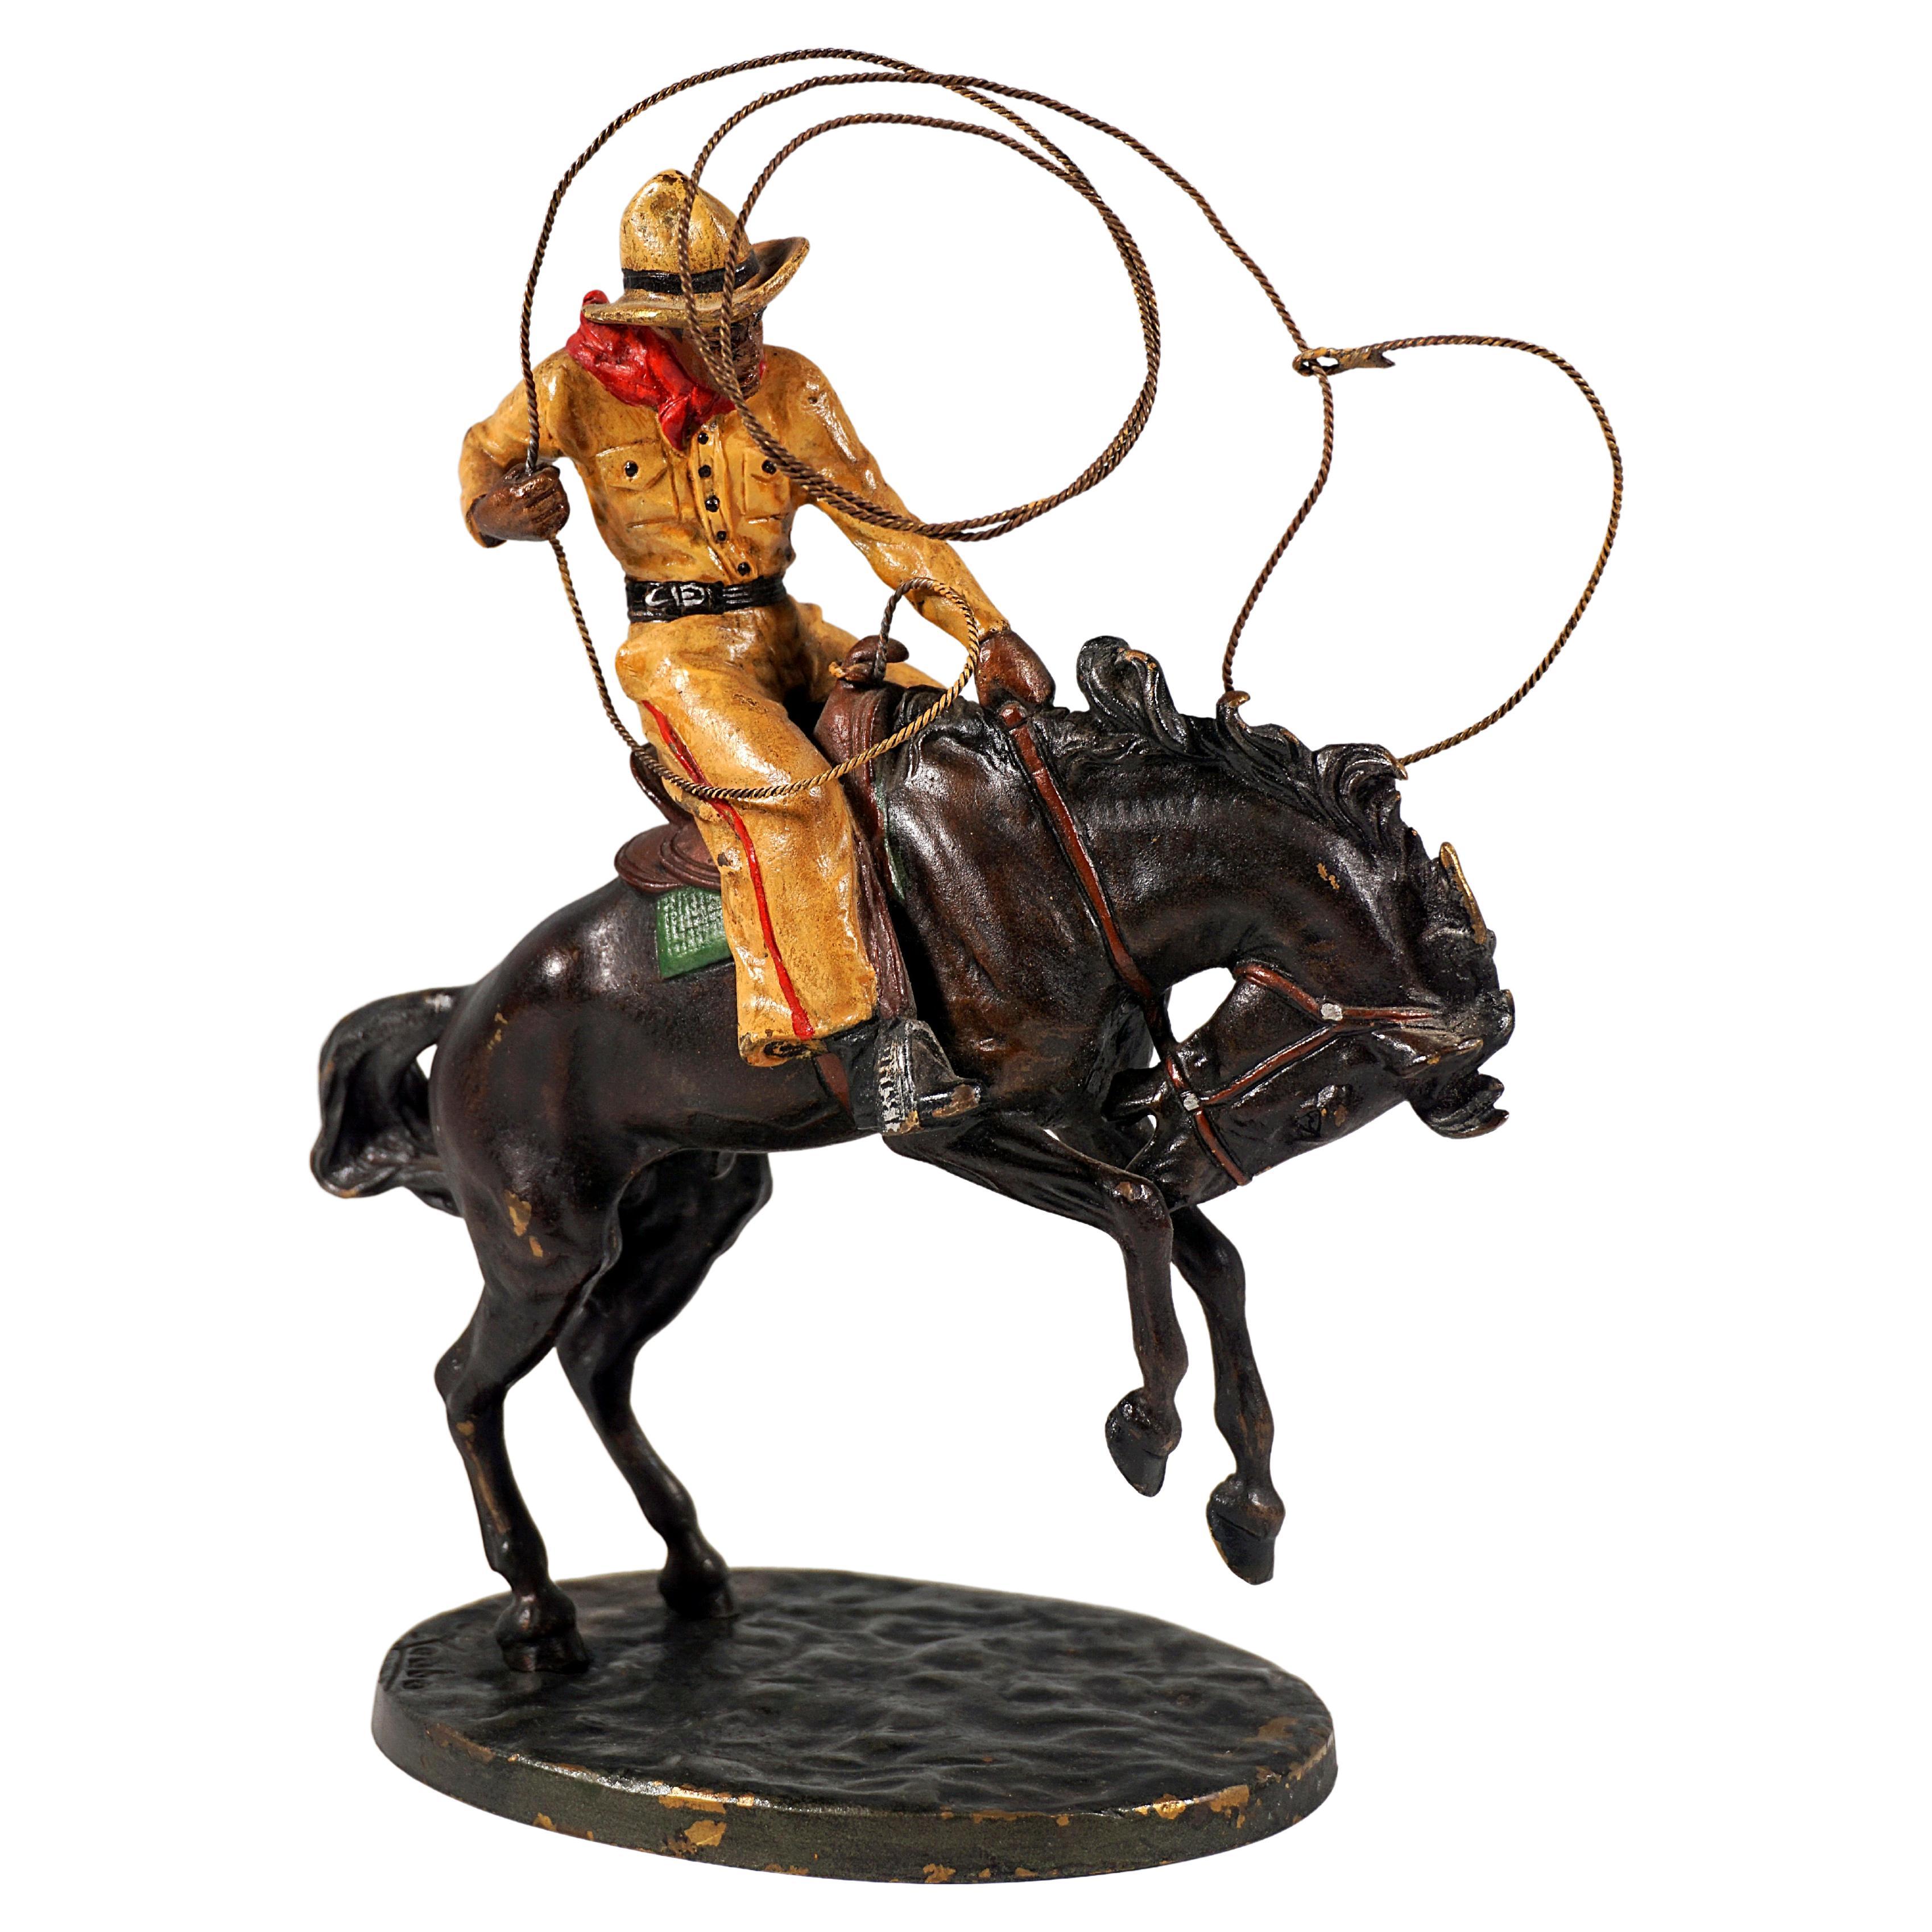 Cowboy avec lasso sur cheval, figurine viennoise en bronze de Carl Kauba, vers 1920